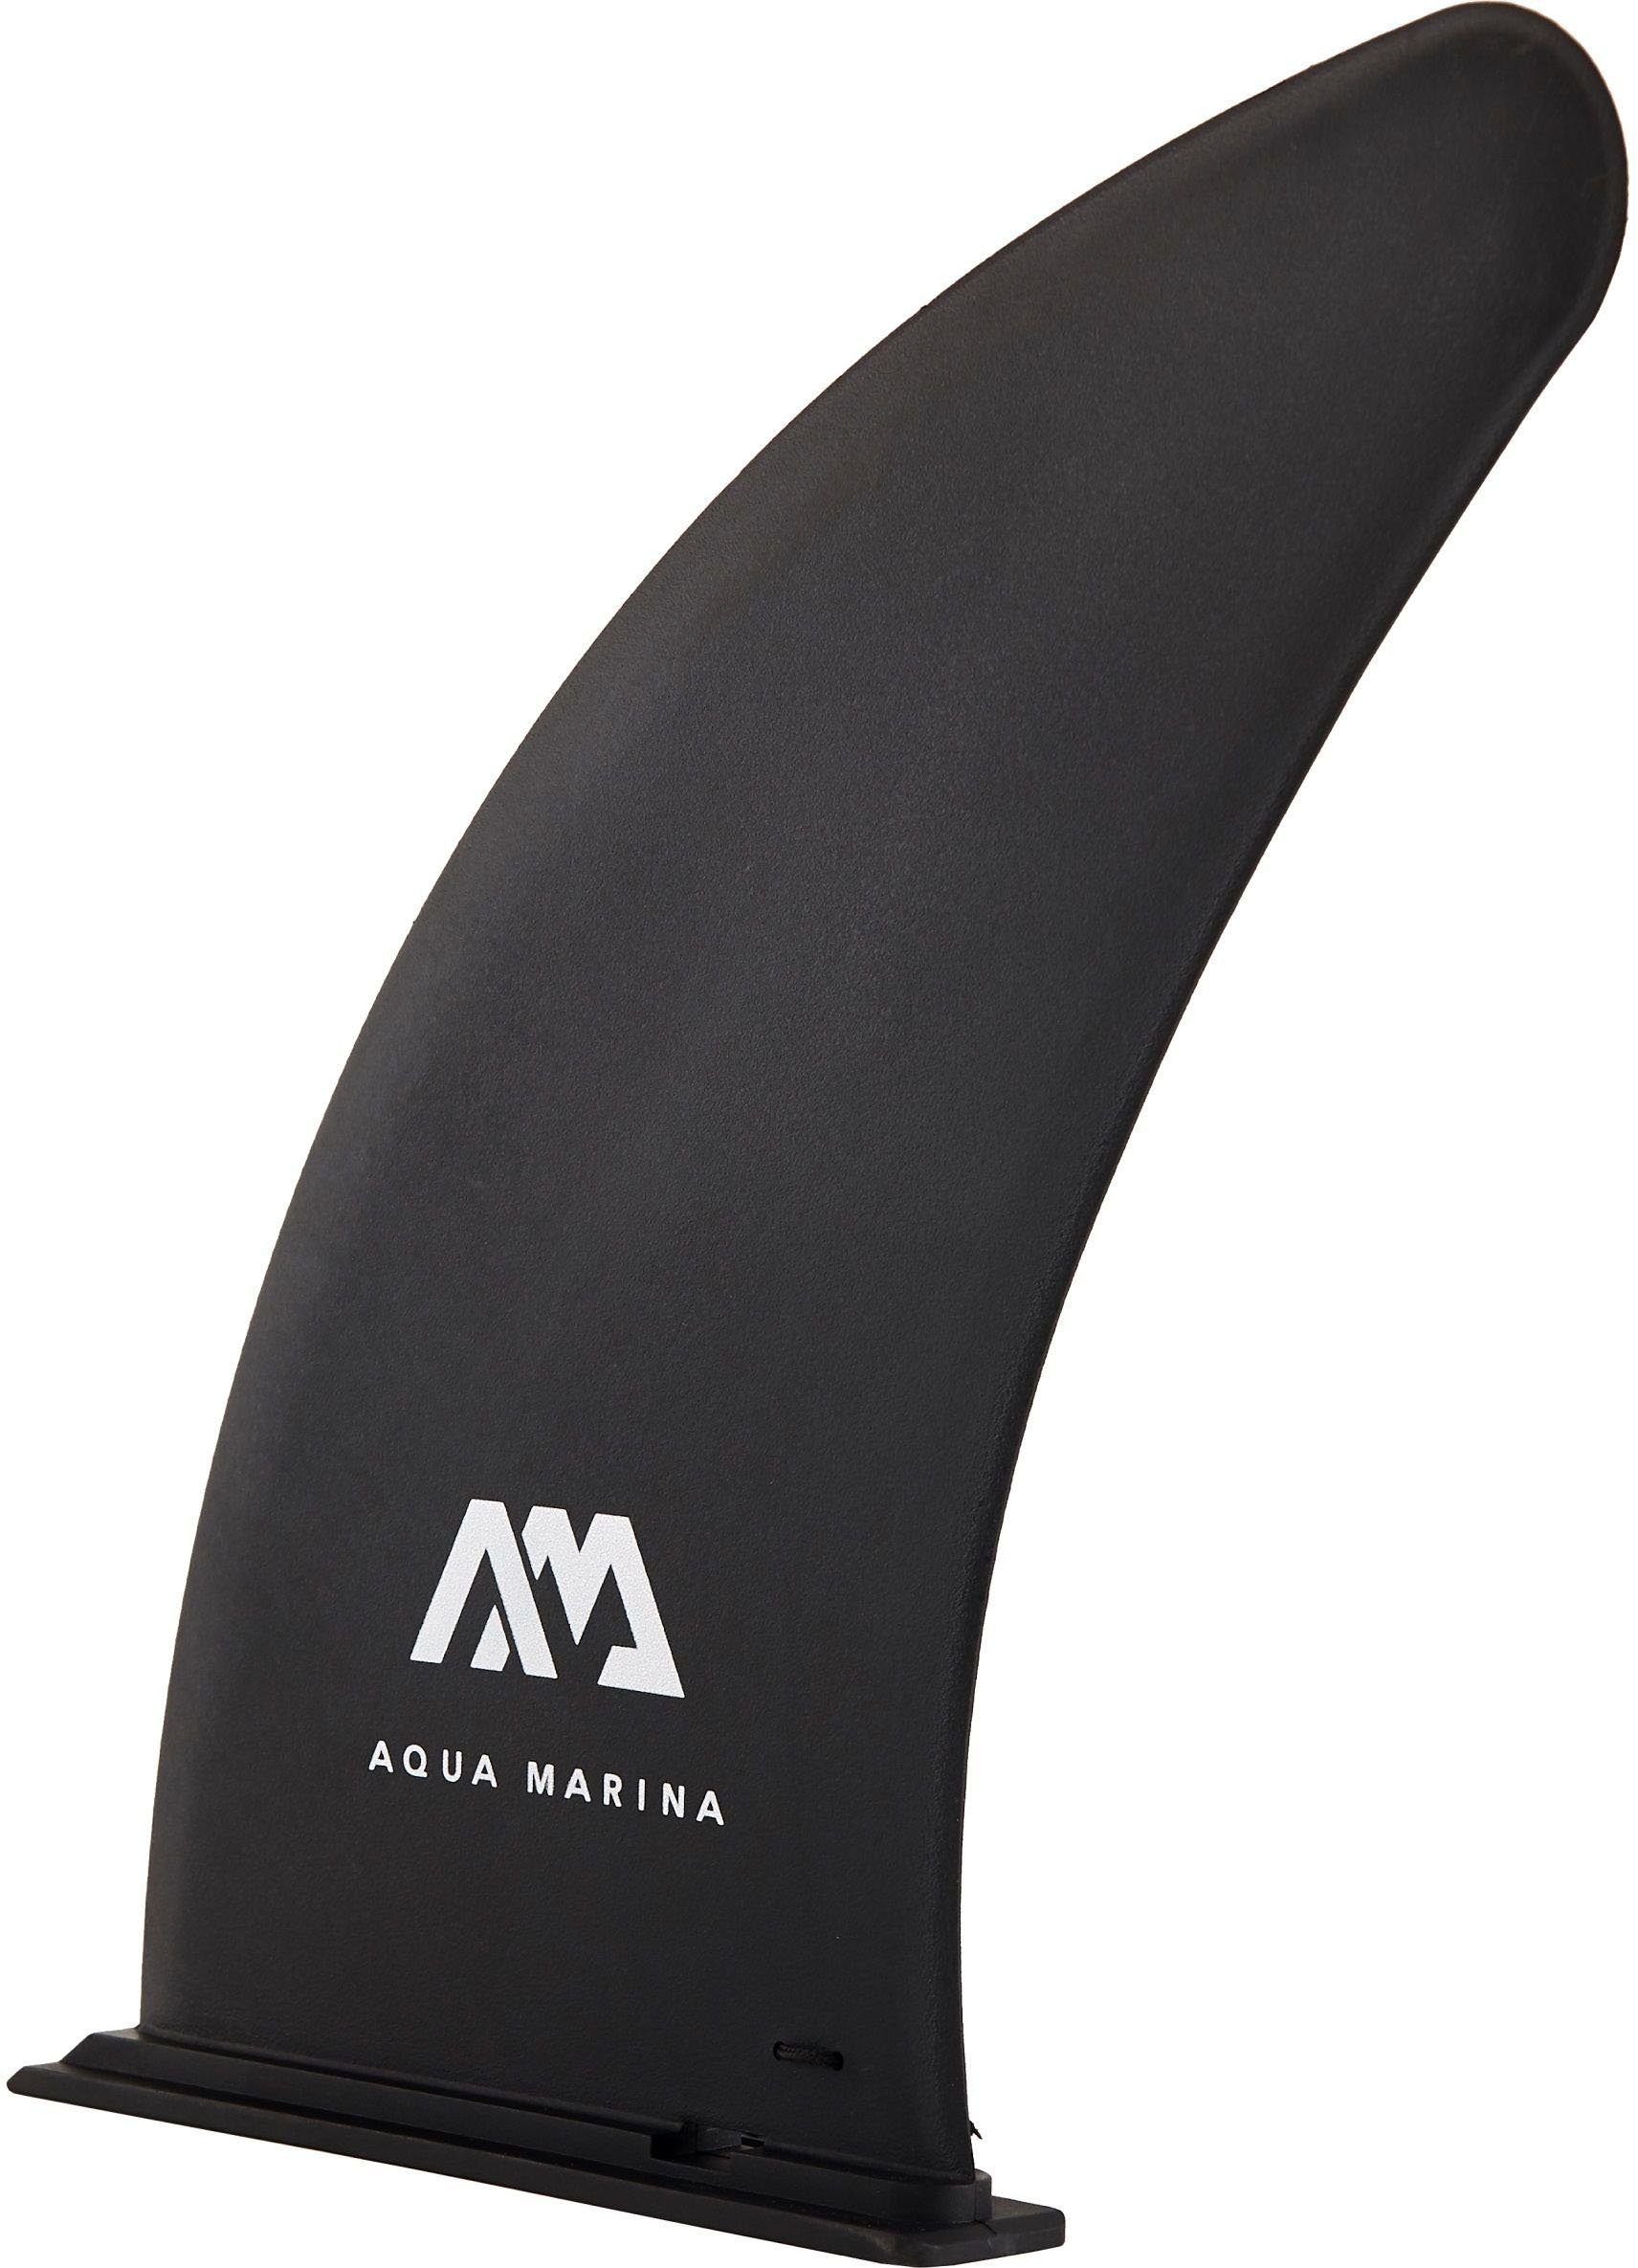 AQUA MARINA Fusion, Marina Aqua Inflatable tlg) SUP-Board (6